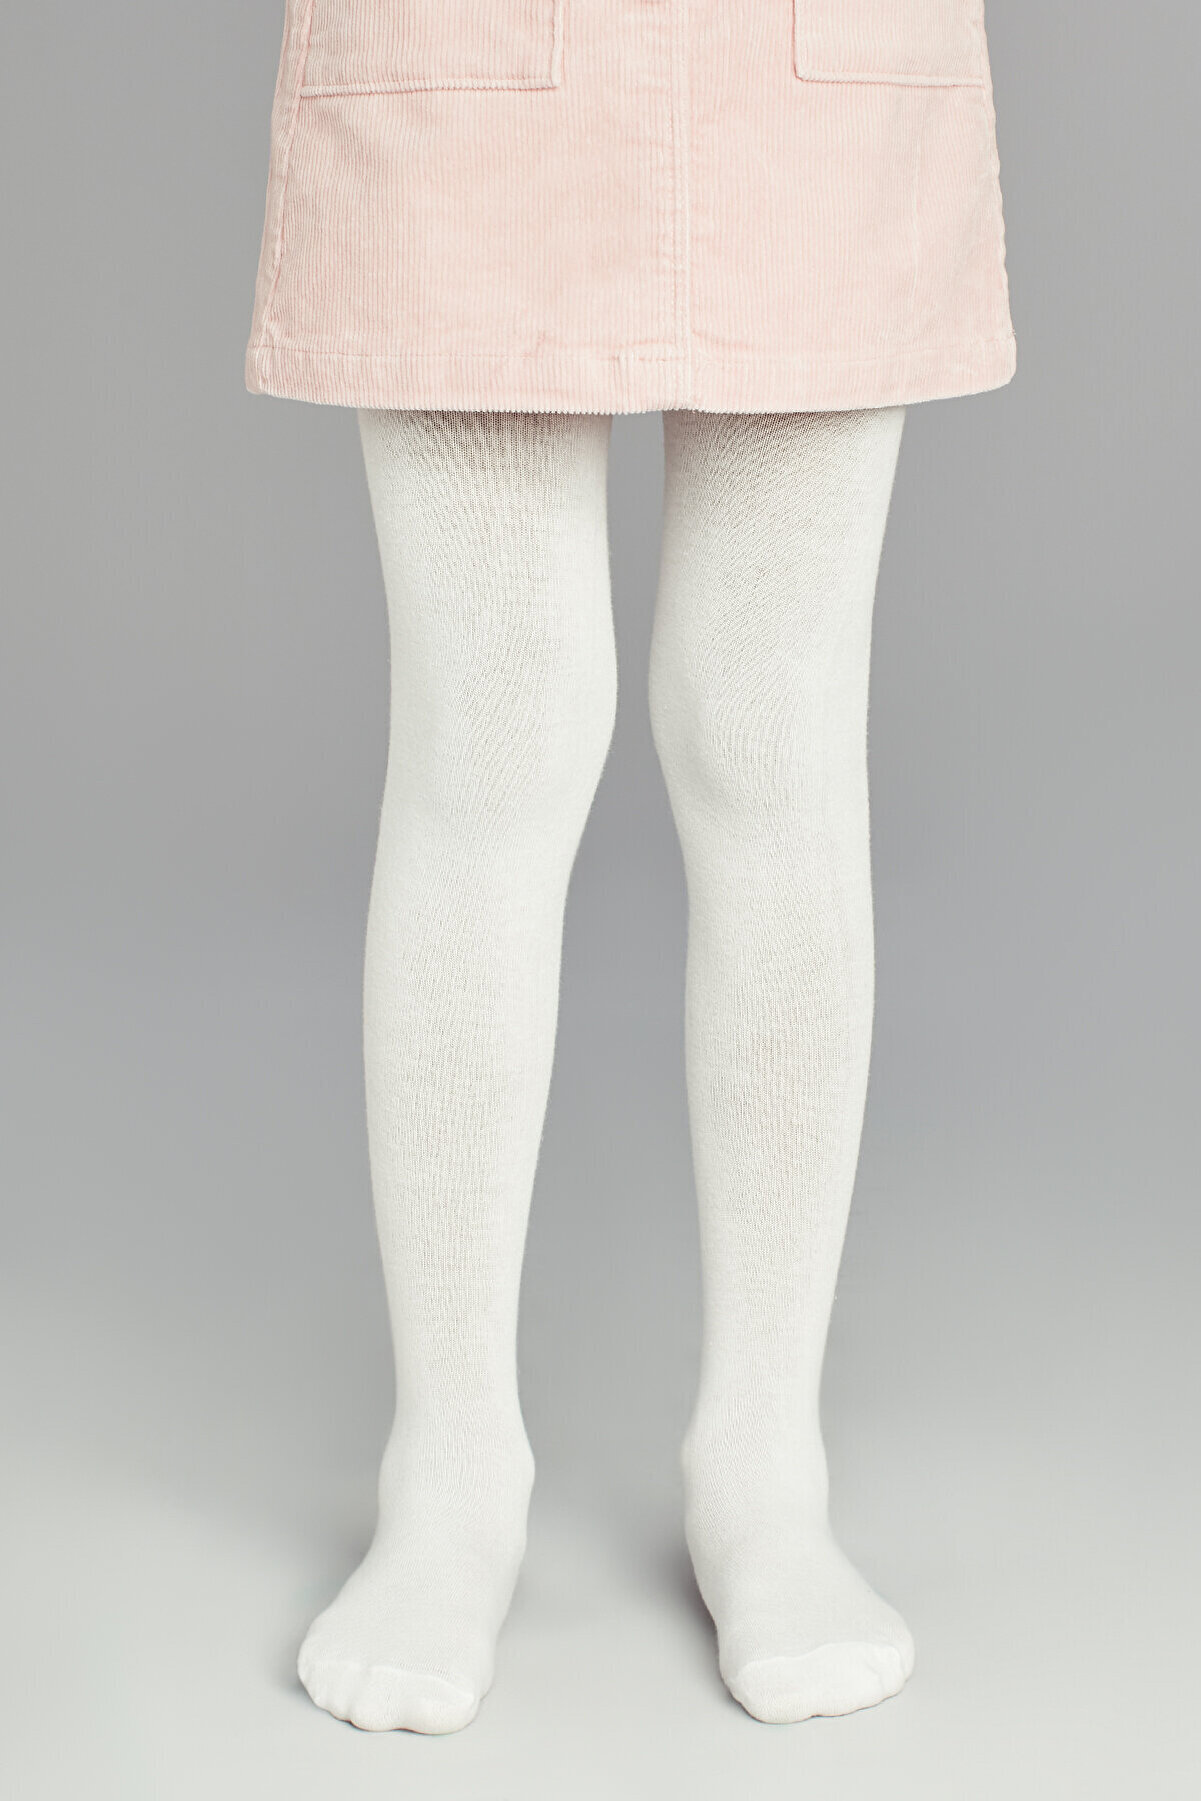 Penti Beyaz Kız Çocuk Desenli Külotlu Çorap